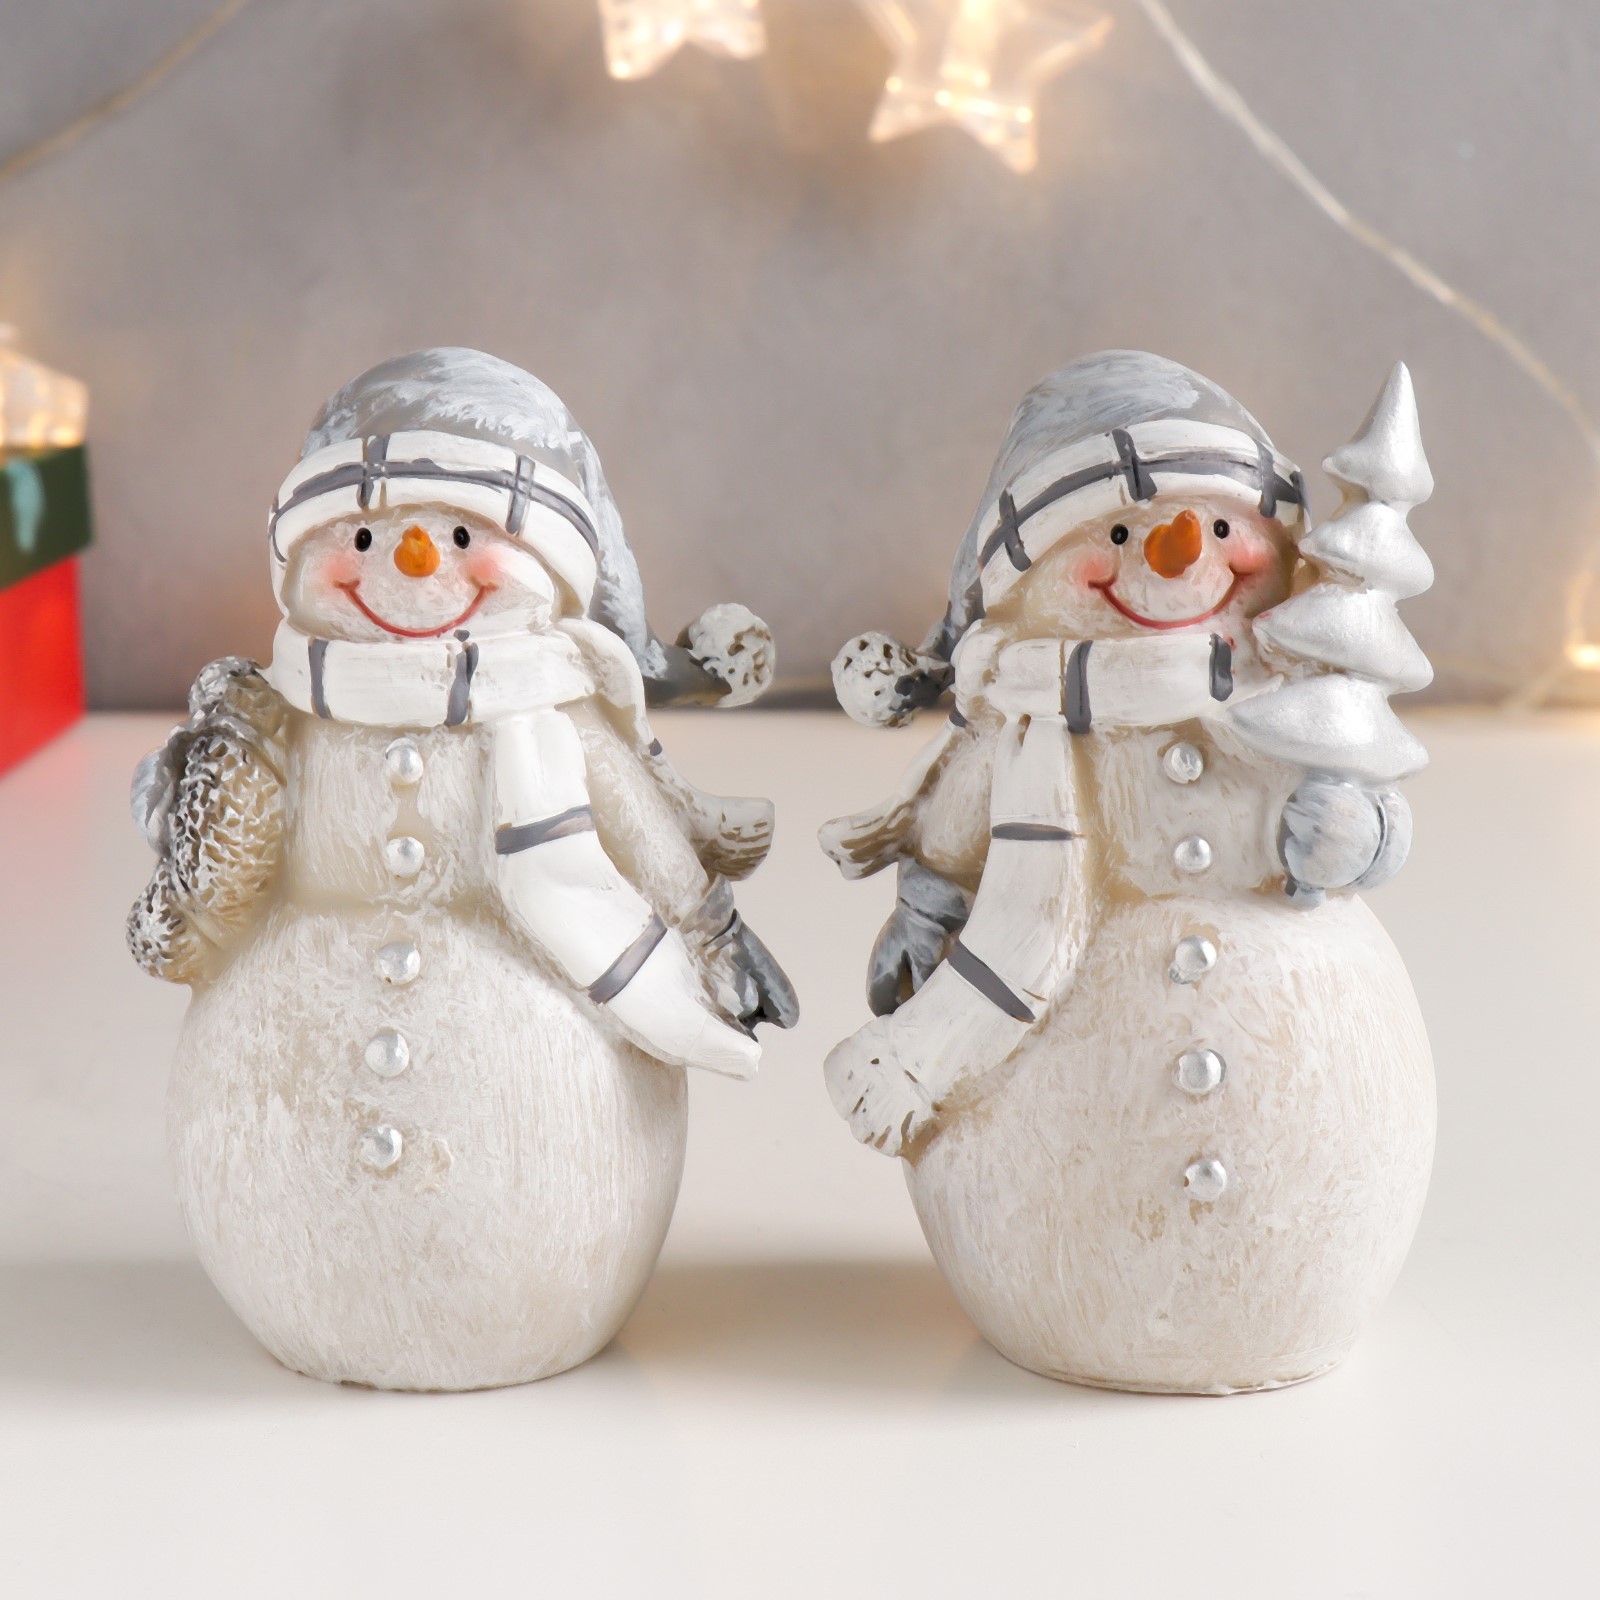 Сувенир Снеговик в сером колпаке и белом шарфике, с ёлкой в ассортименте (12х7х6 см)